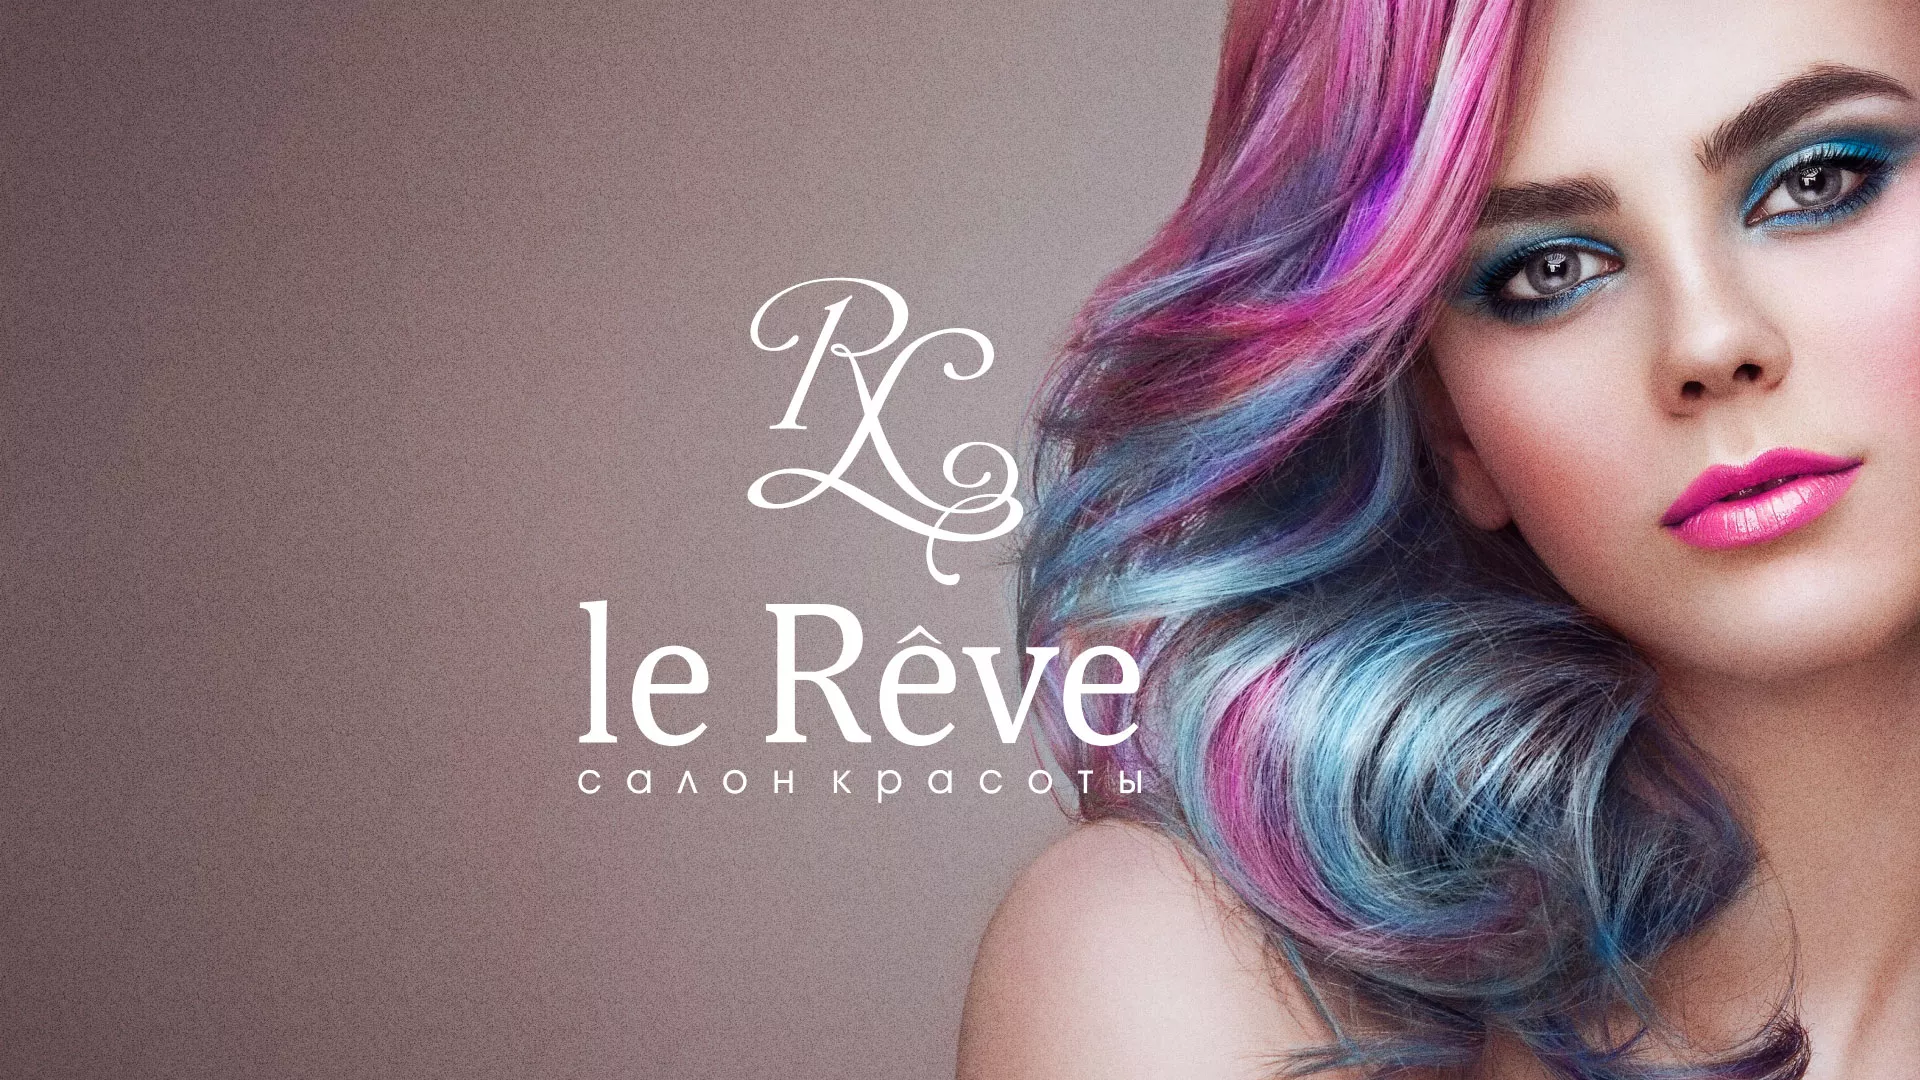 Создание сайта для салона красоты «Le Reve» в Чкаловске